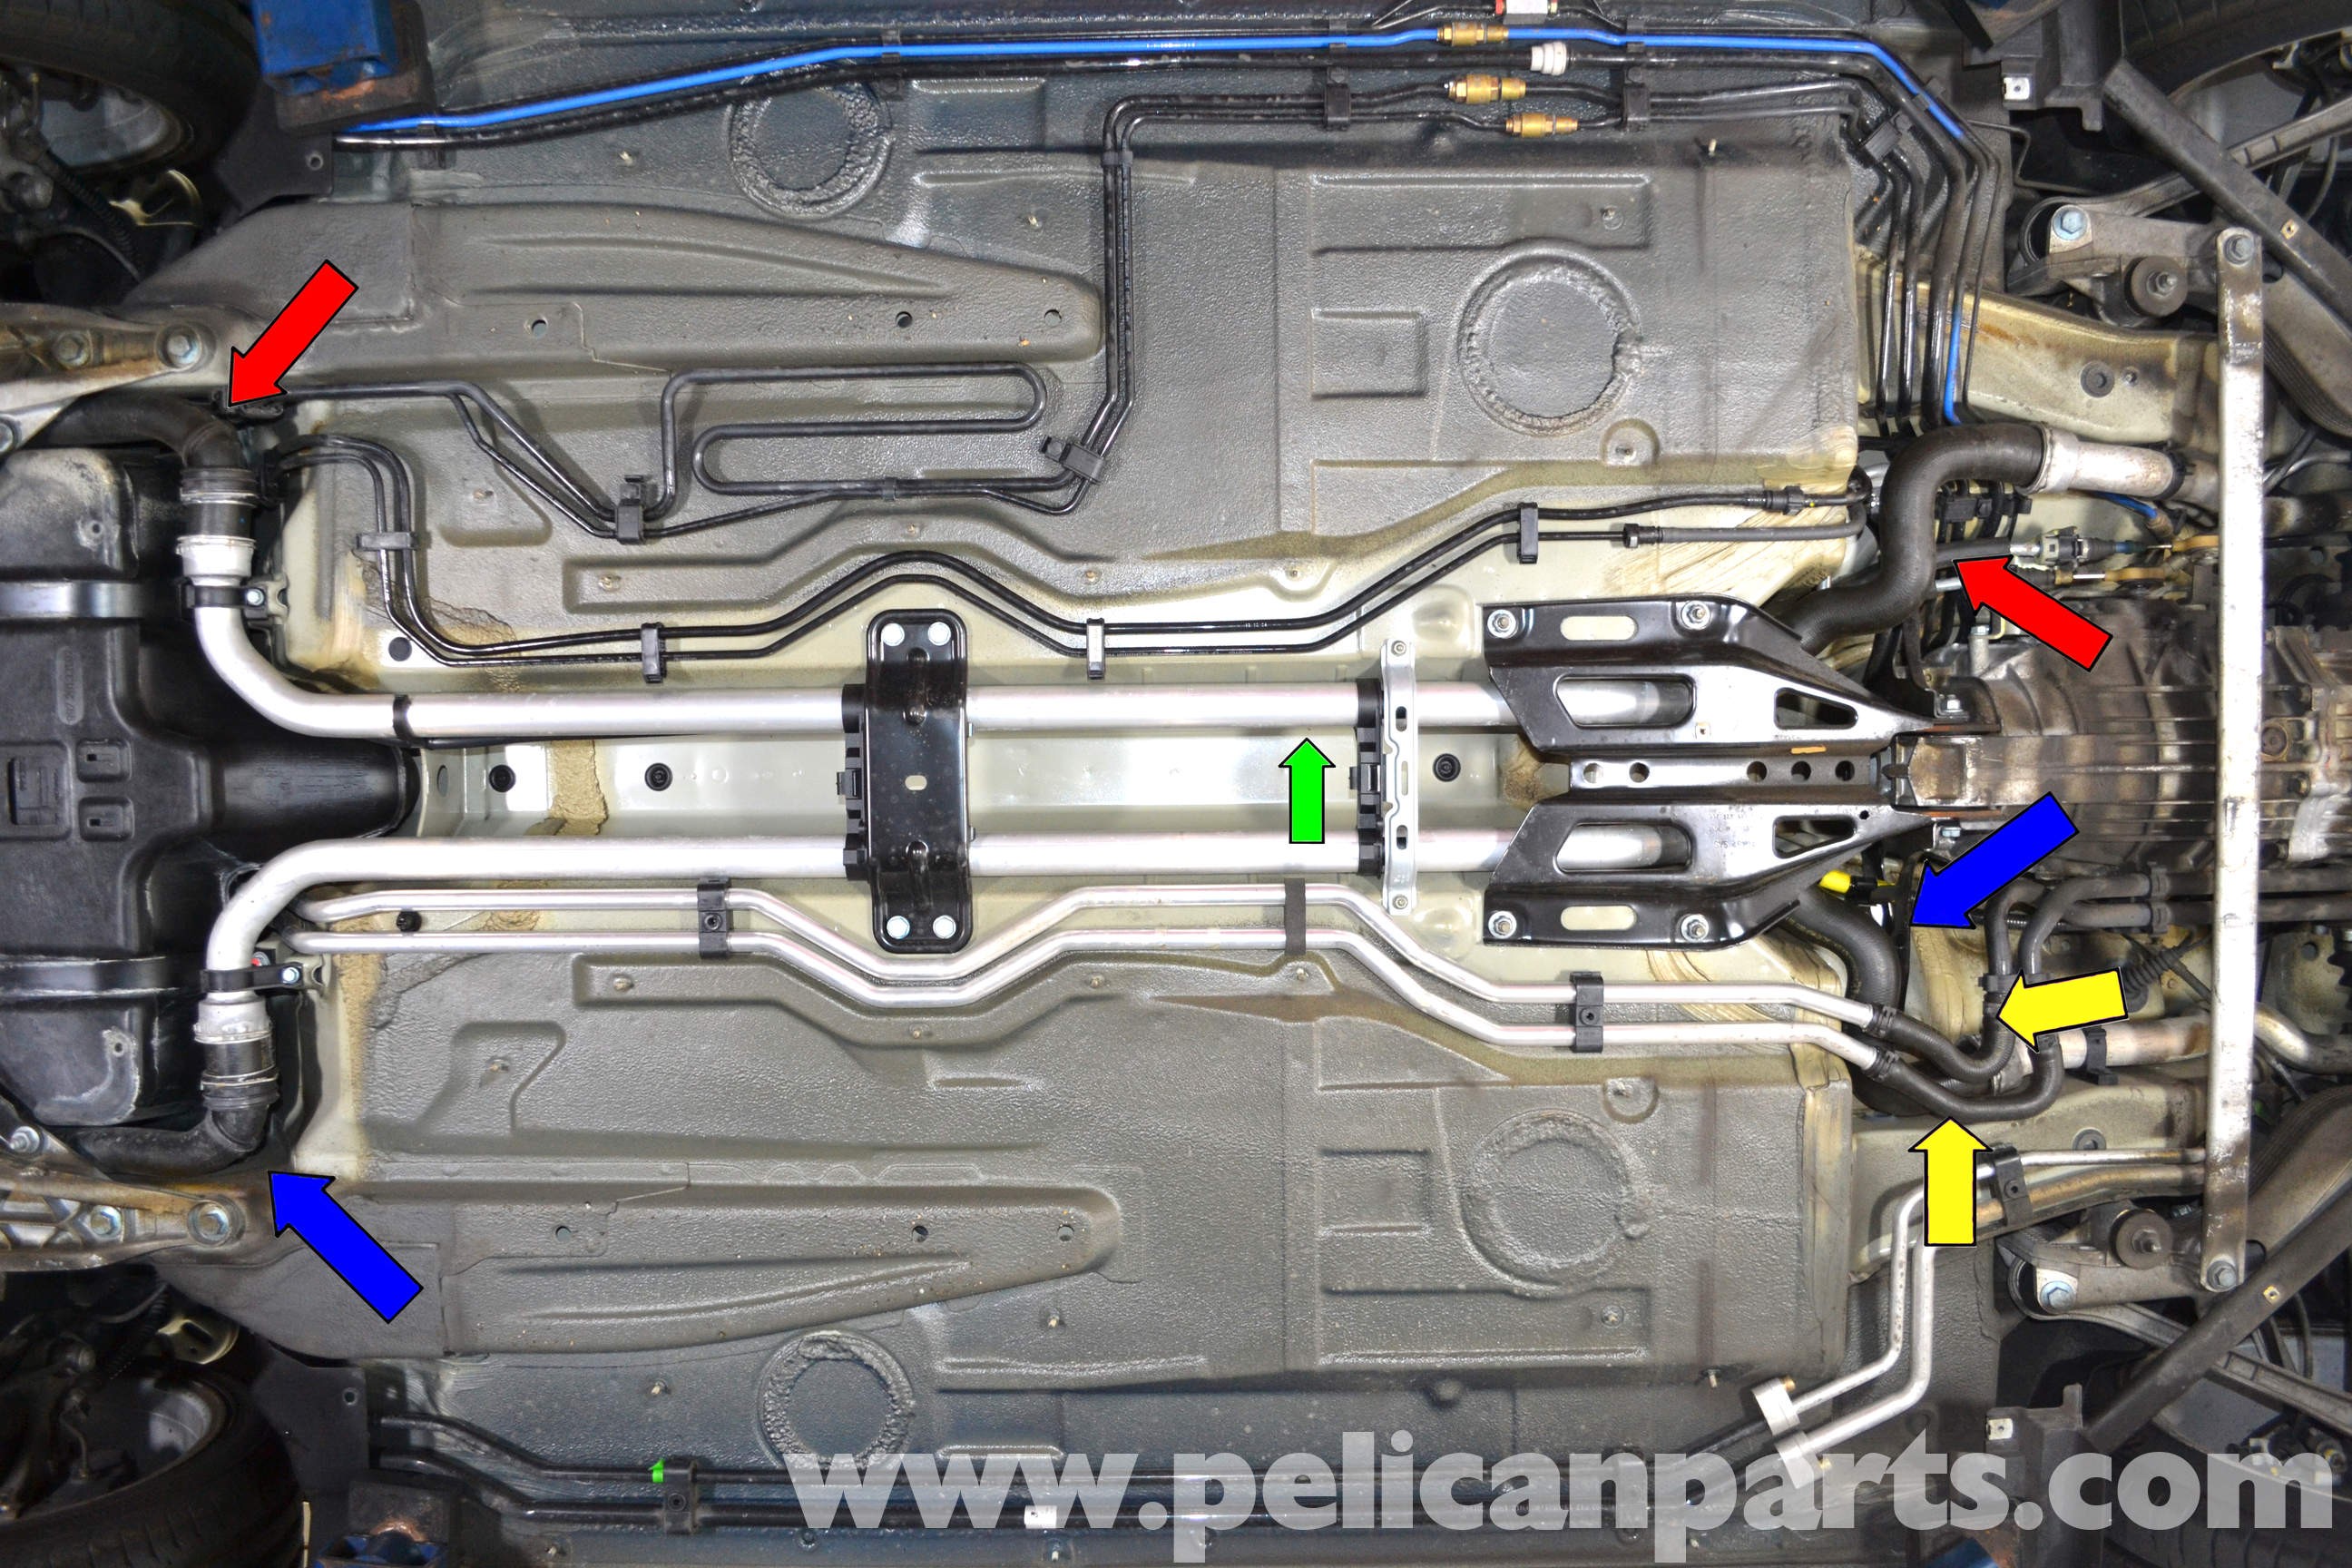 Car Cooling System Diagram Porsche 911 Carrera Coolant Hose Replacement 996 1998 2005 997 Of Car Cooling System Diagram